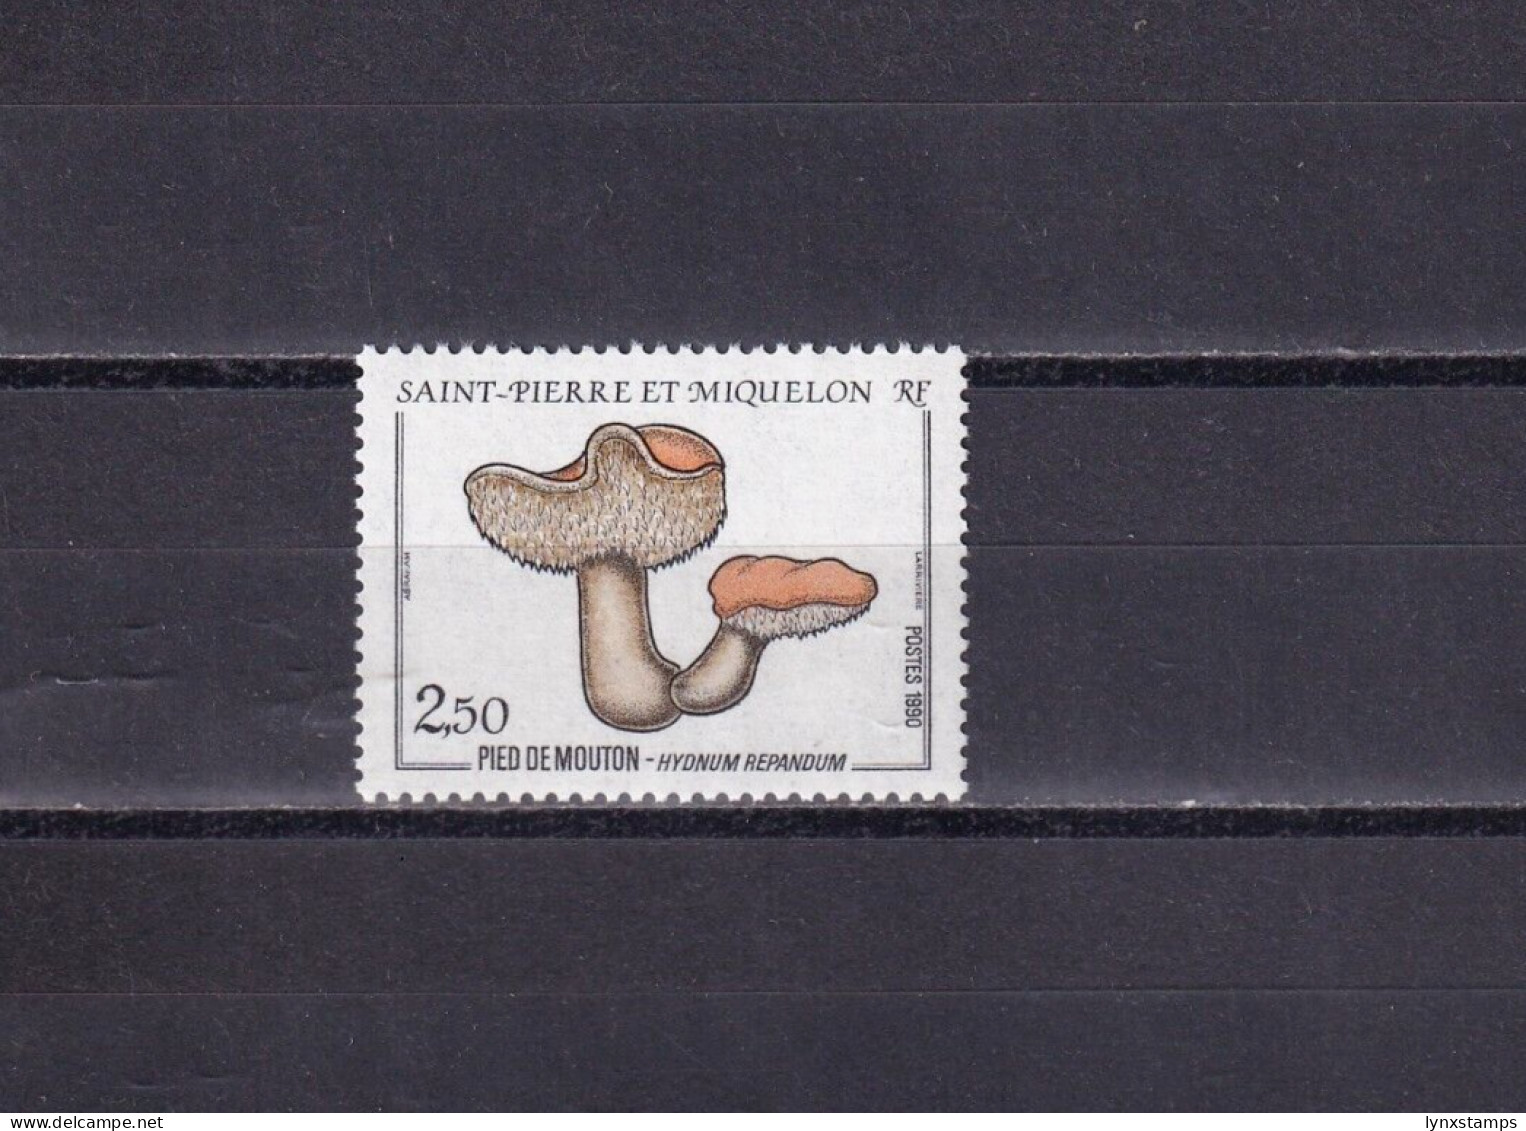 SA03 St Pierre Et Miquelon France 1990 Mushrooms Mint Stamp - Neufs